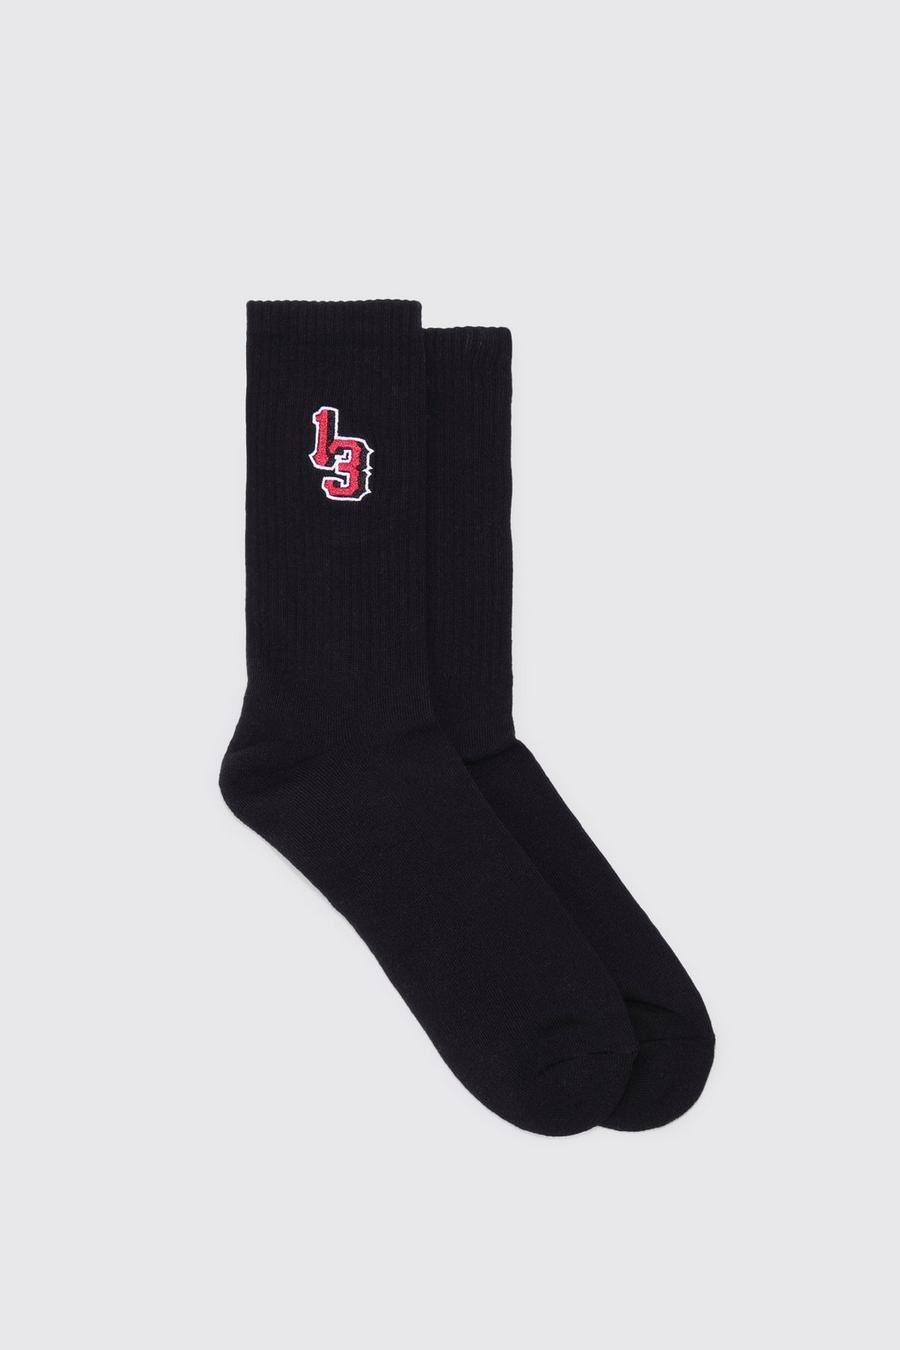 Sport-Socken mit 13-Stickerei, Black